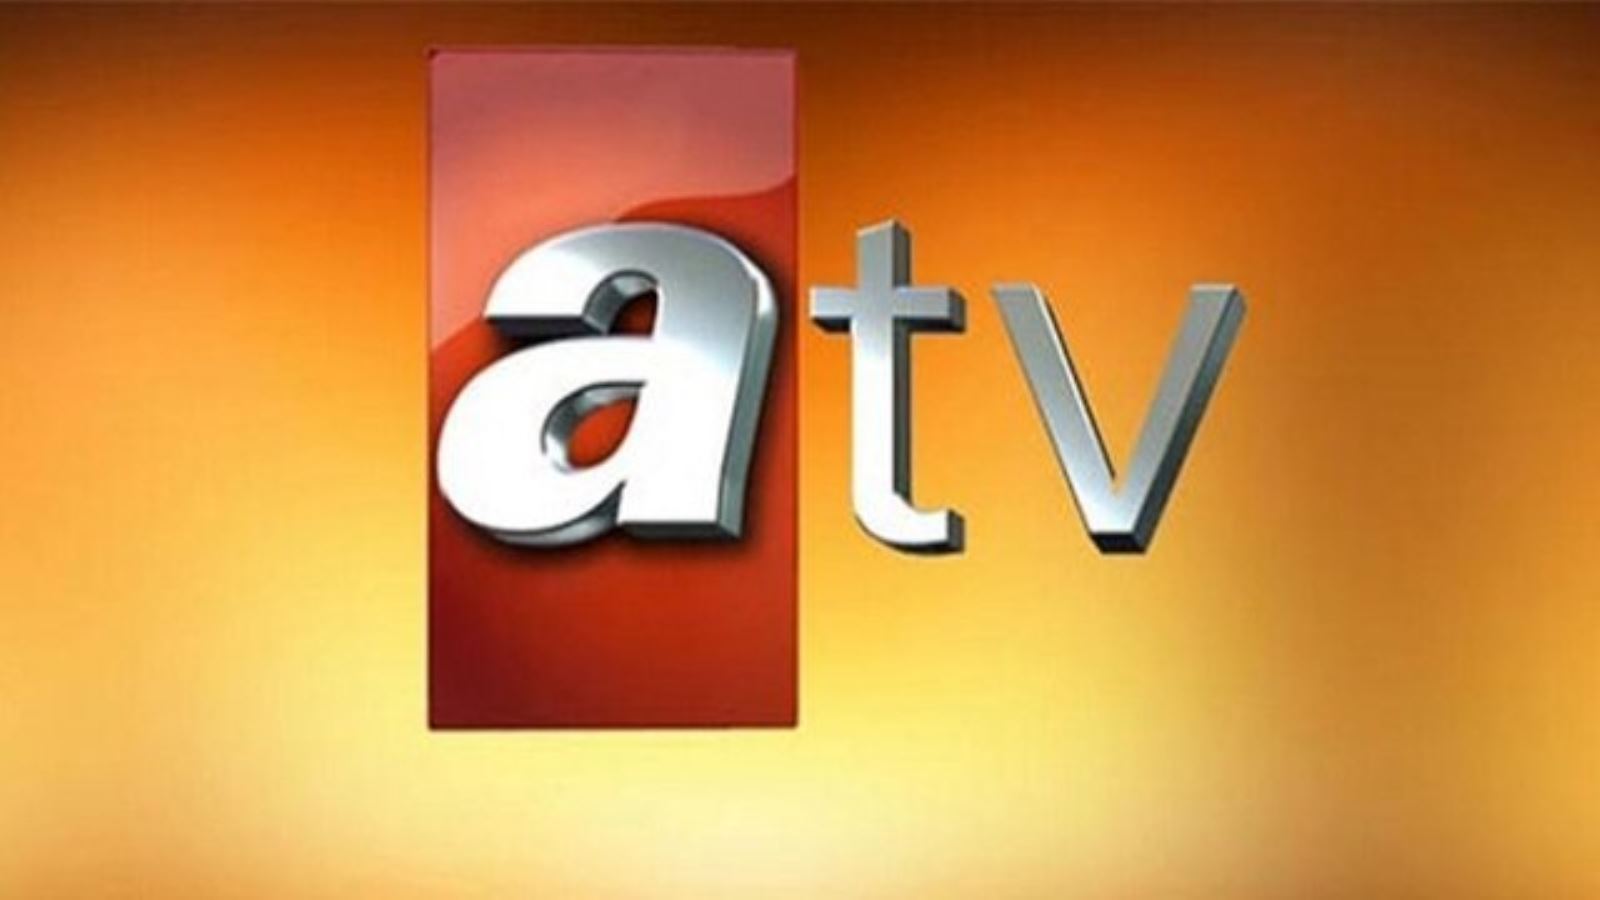 Atv azad tv. Atv (Турция). Atv канал. АТВ логотип. Atv (Азербайджан).